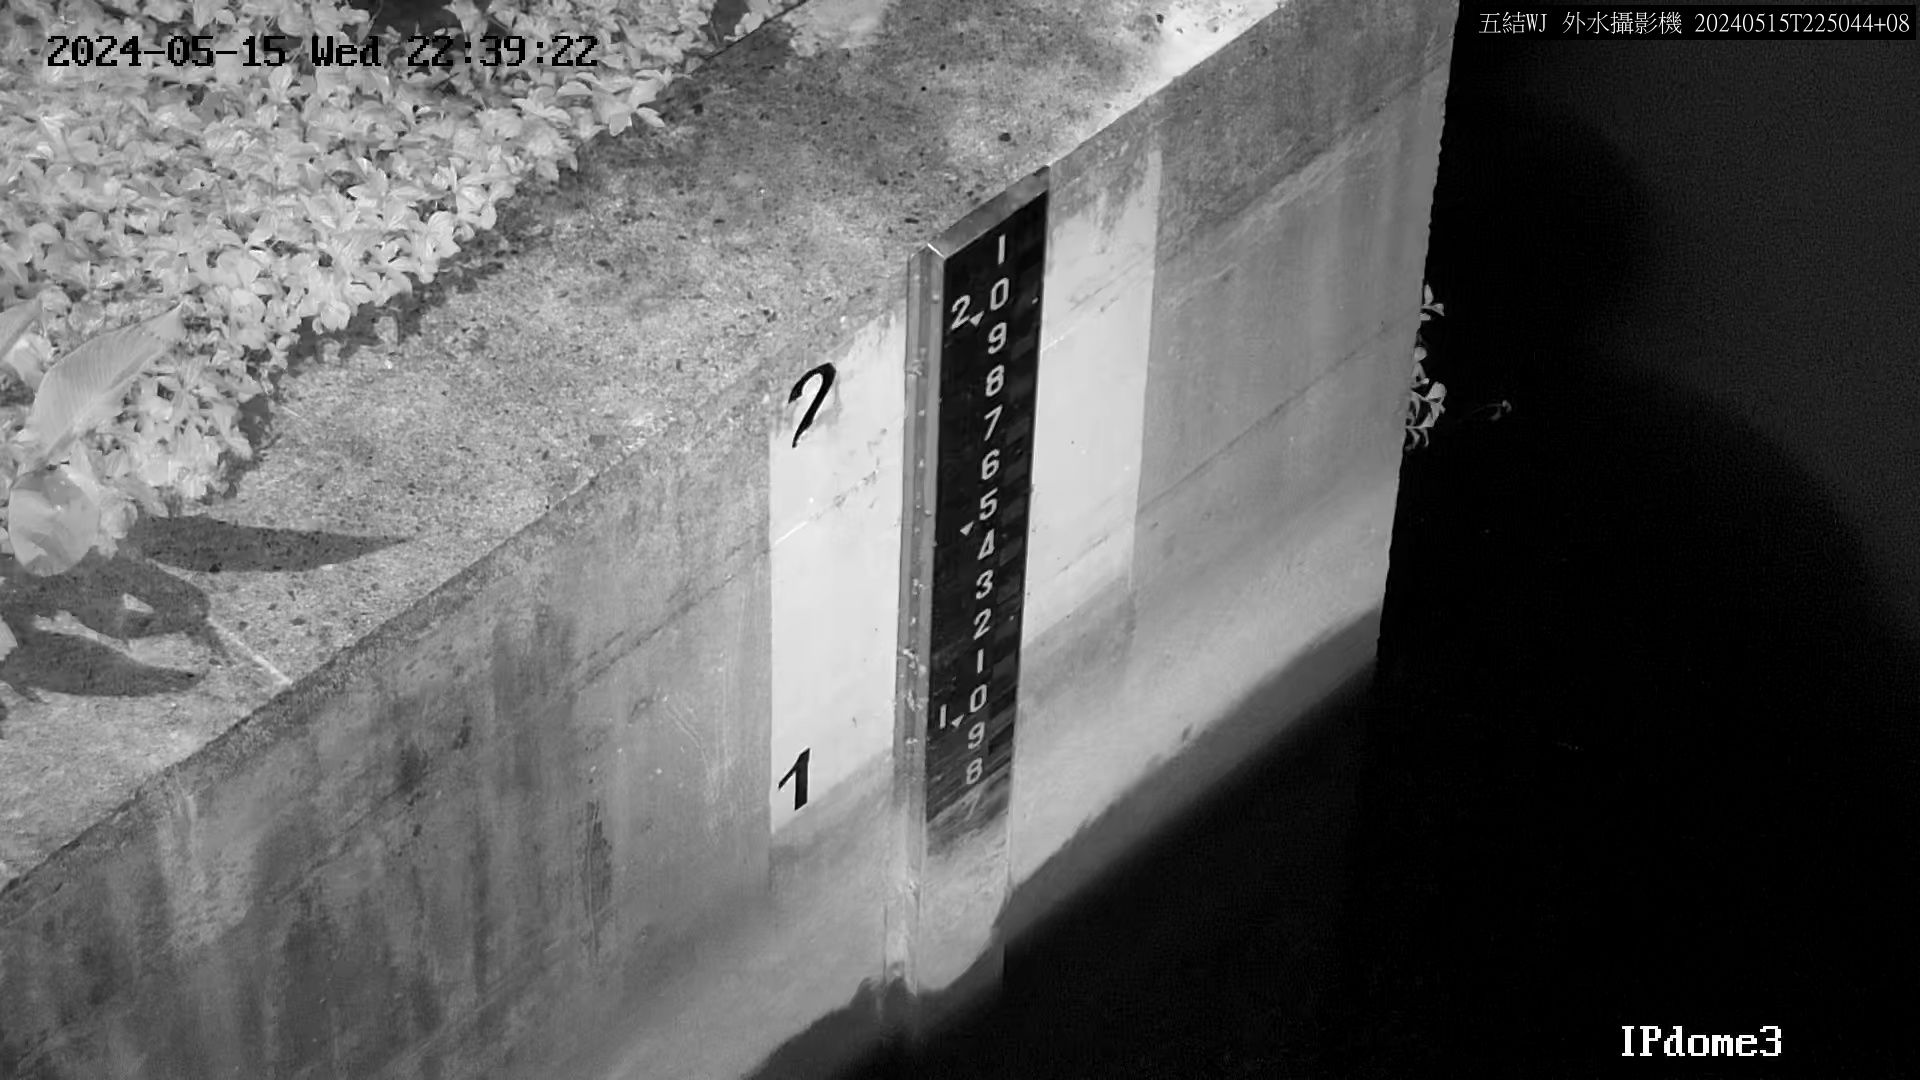 一河局 五結副閘排水防潮閘門外水位 氣溫22.4度